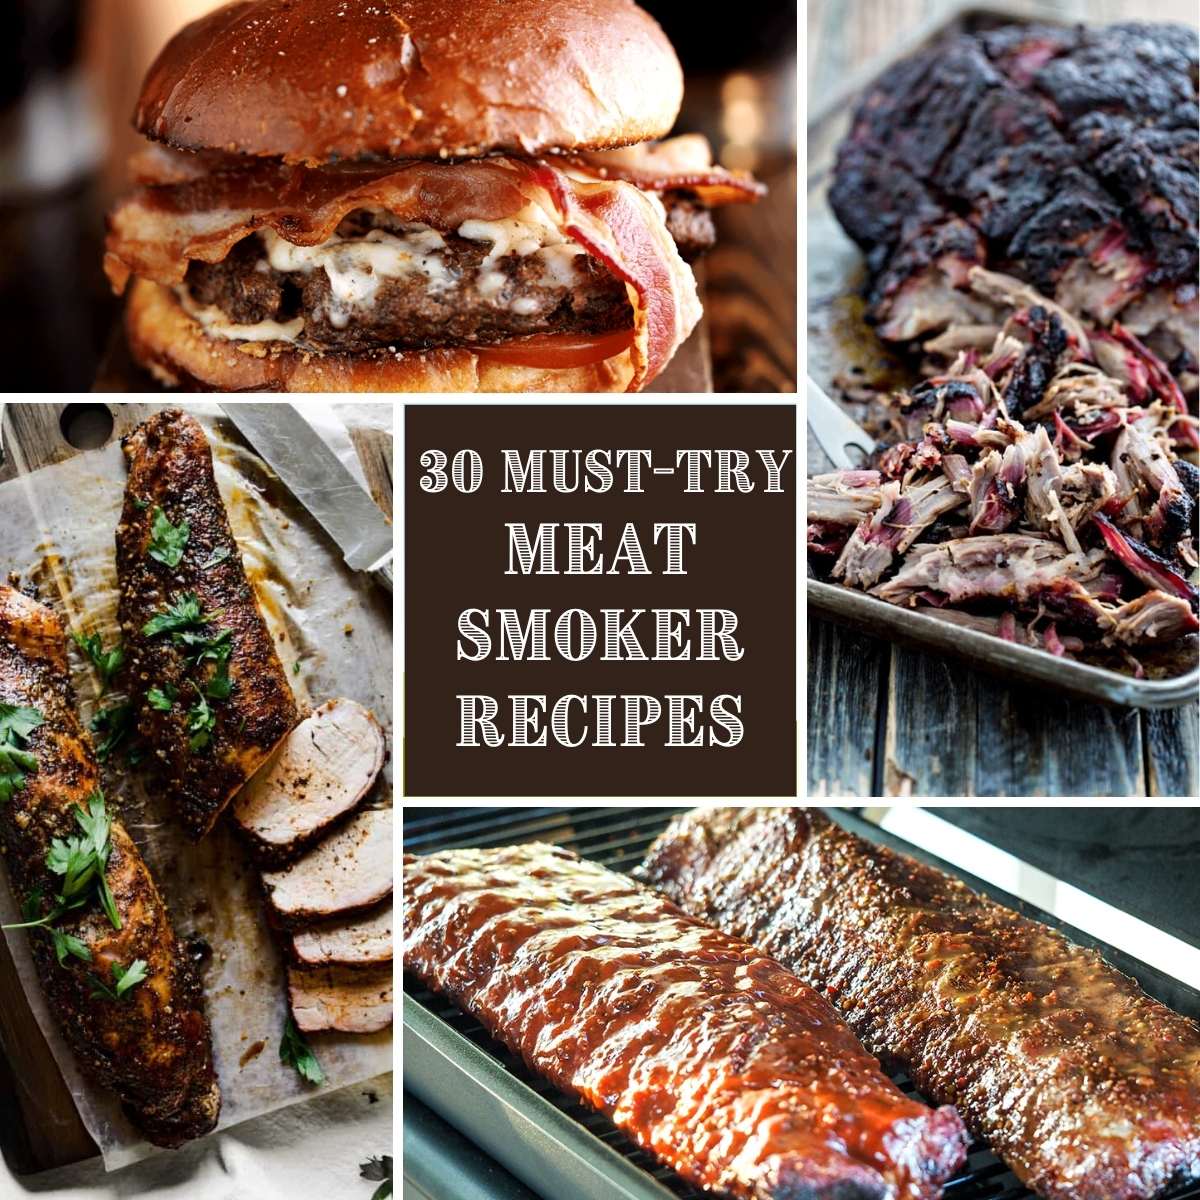 https://ameessavorydish.com/wp-content/uploads/2021/06/Meat-smoker-recipes-feature.jpg